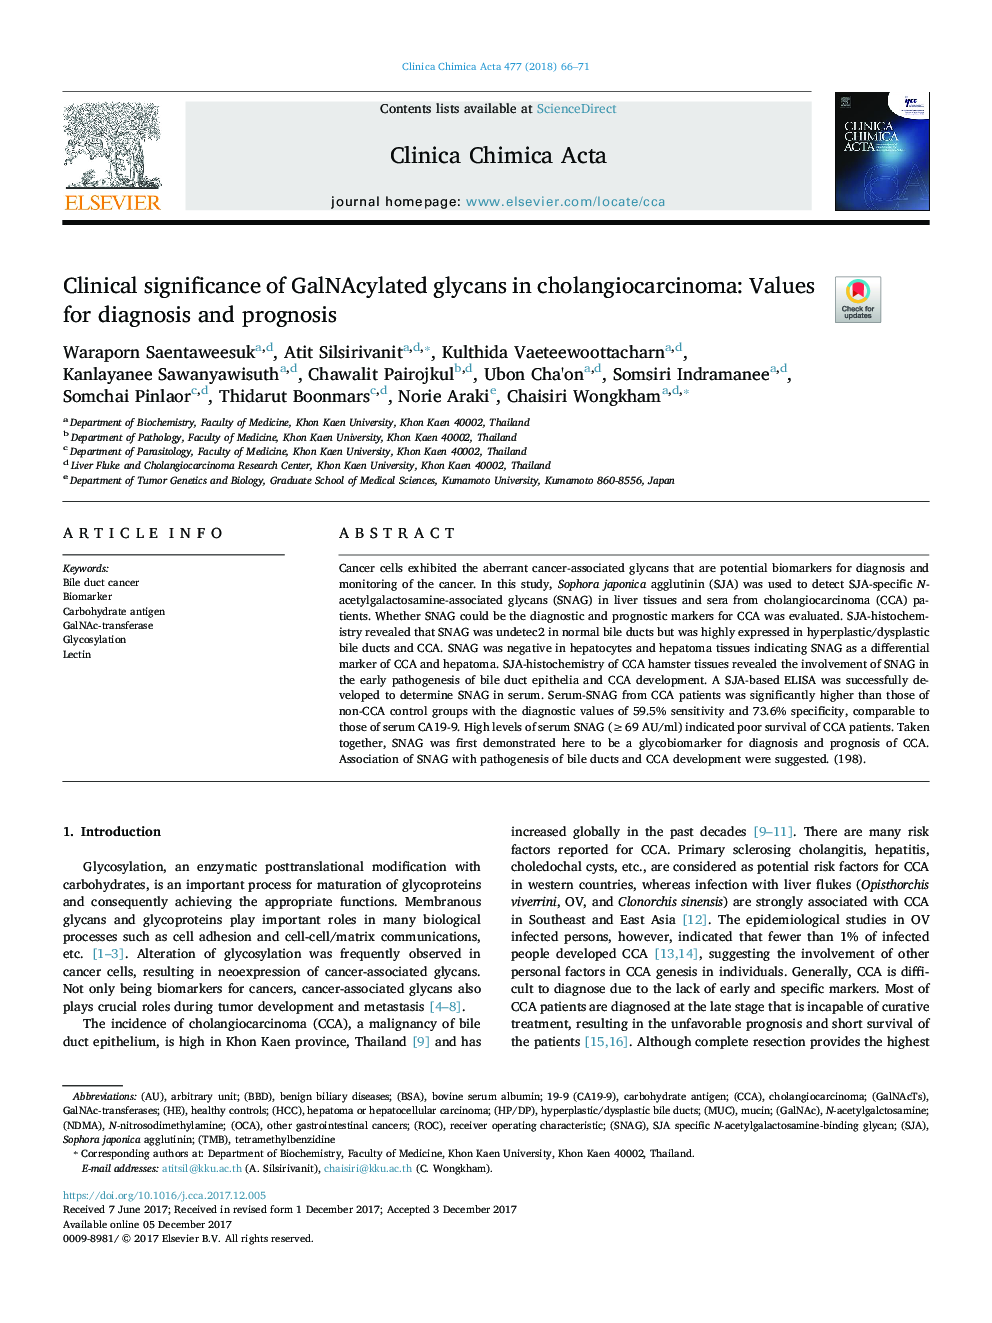 اهمیت بالینی گلیسانی گالاسیونالیته در کلانژیوکارسینوم: ارزش تشخیص و پیش آگهی 